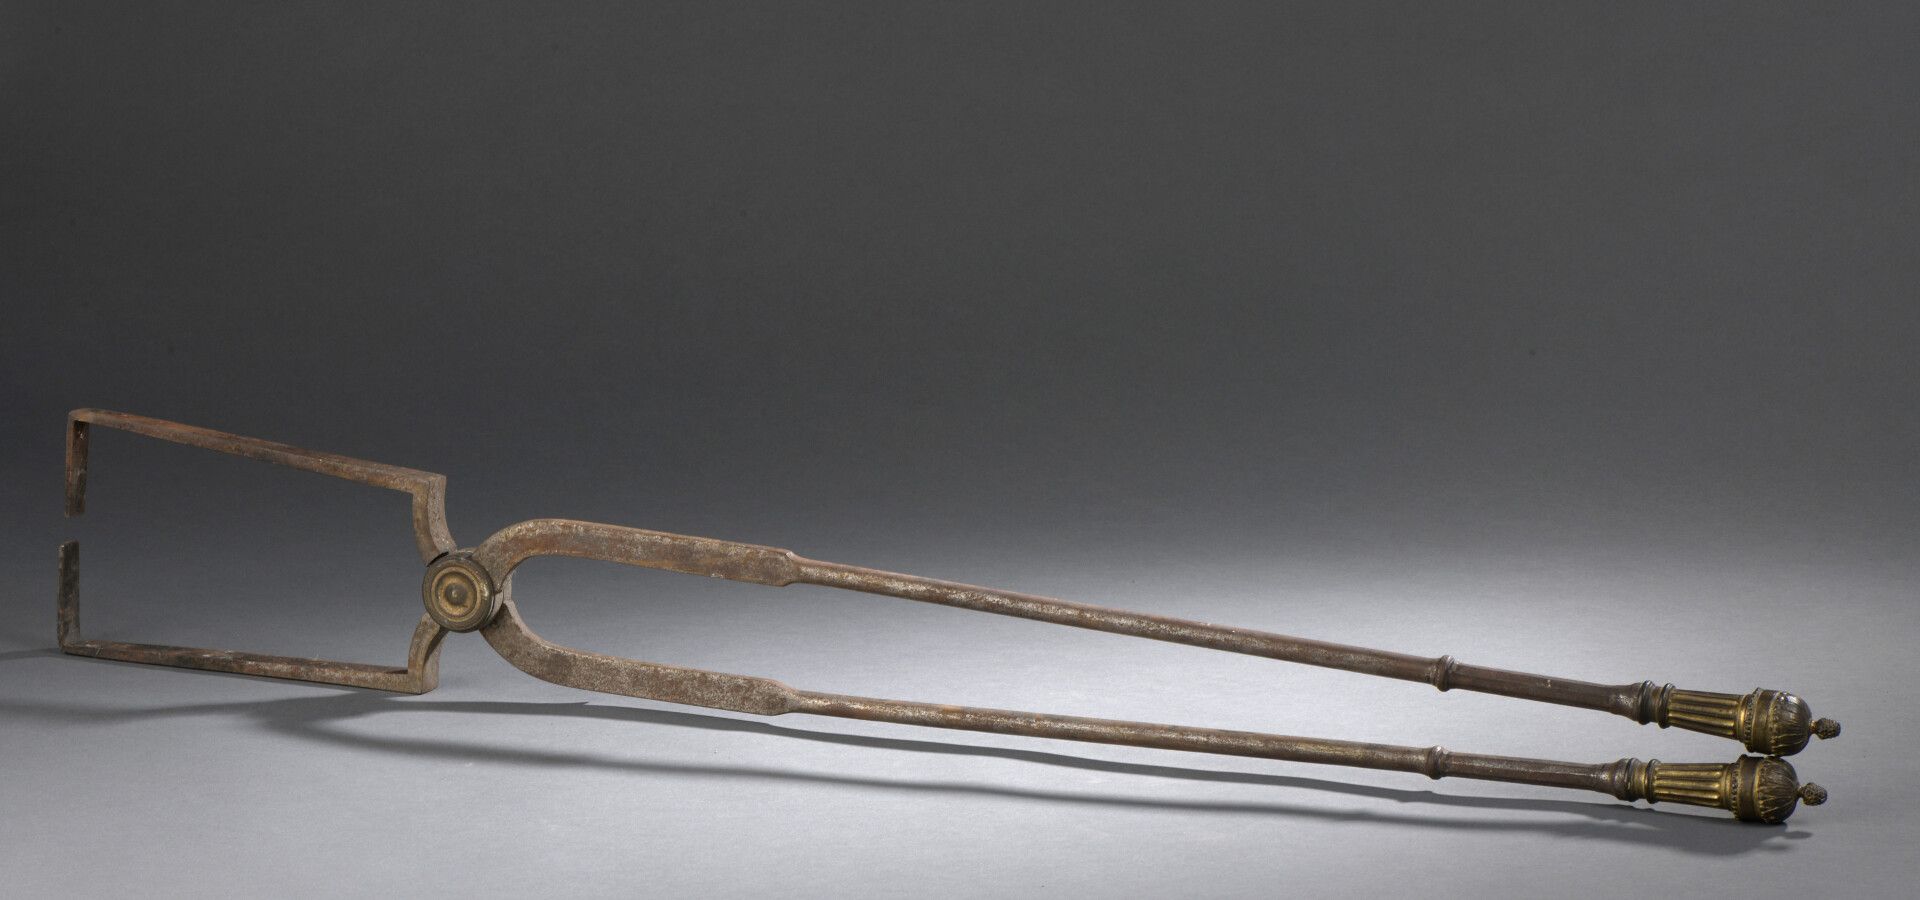 Null 路易十六时期的钢制、铜制和鎏金木制木钳

L. 89 cm